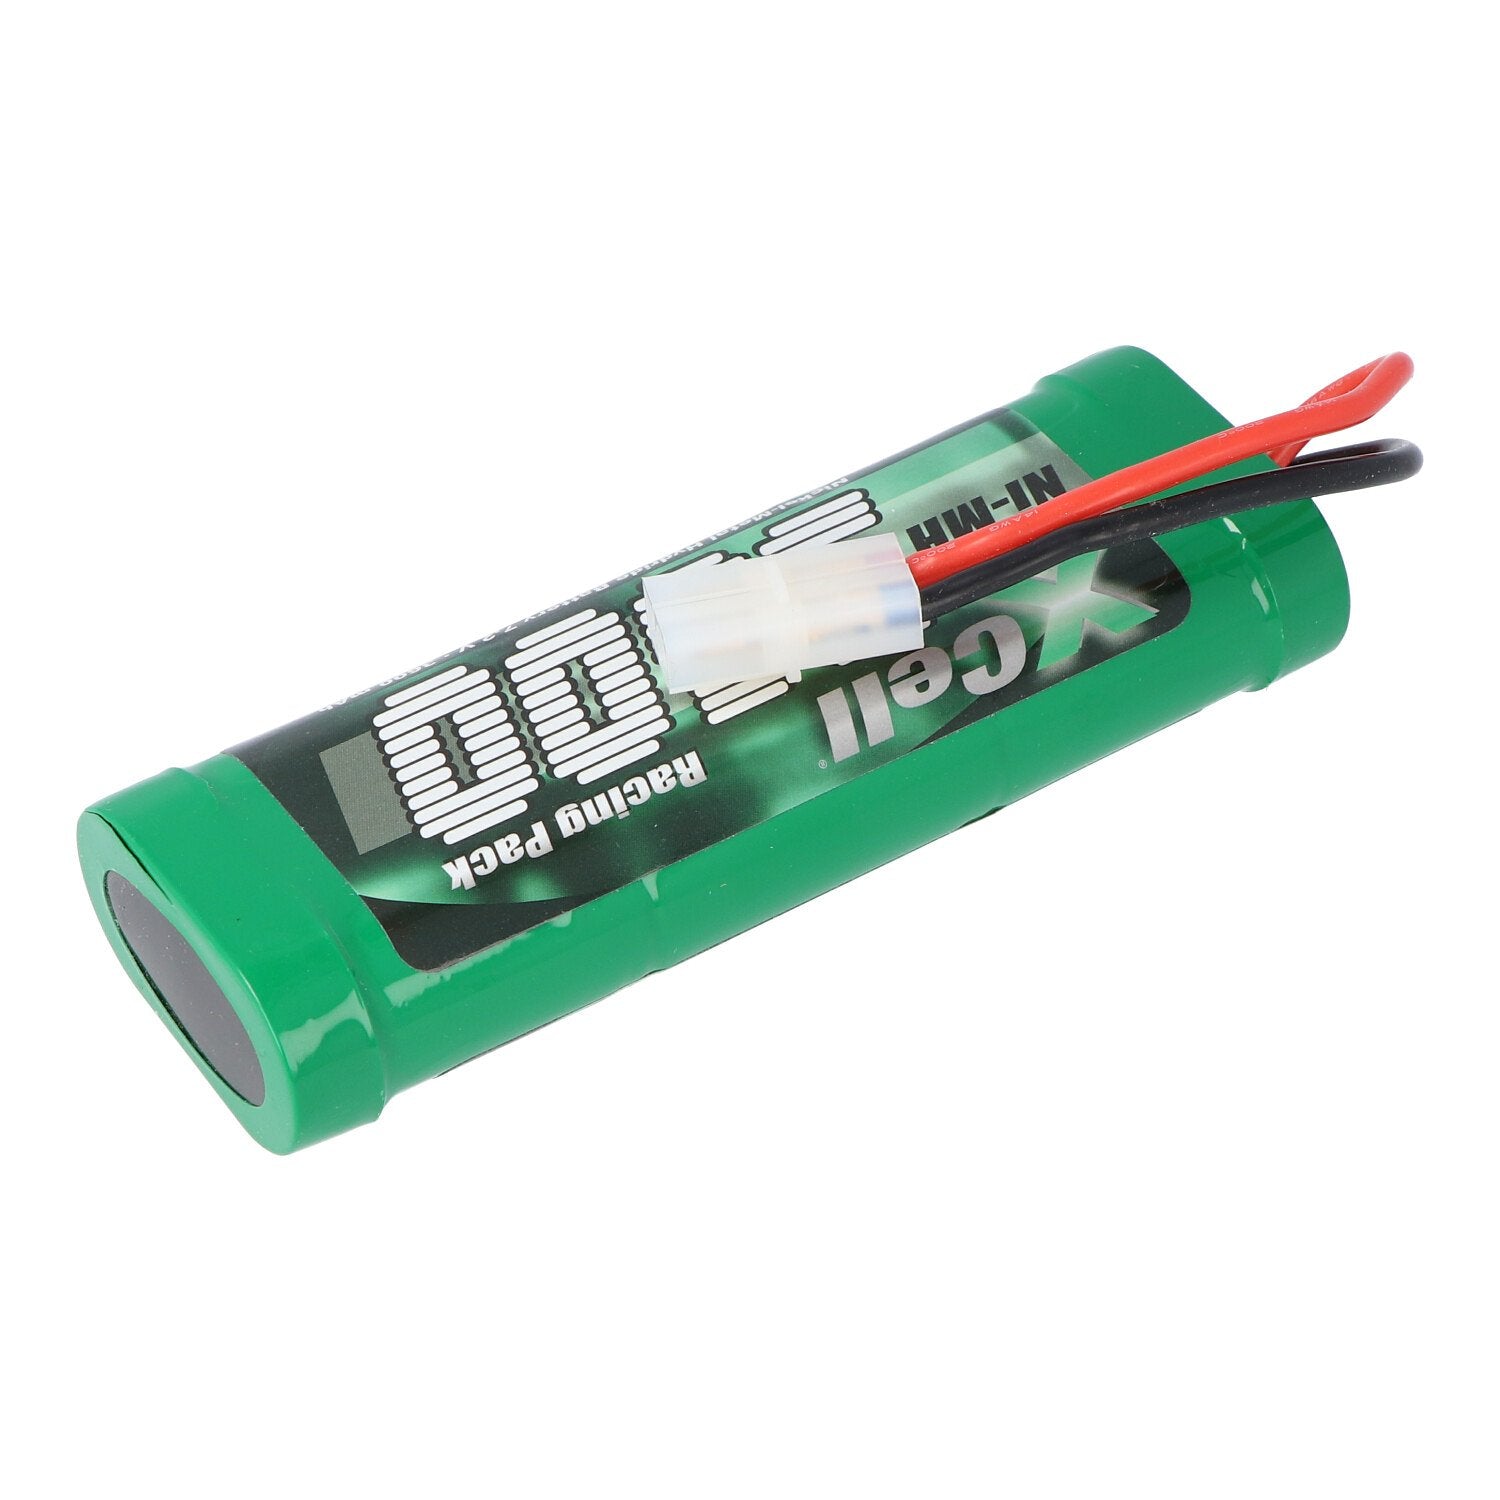 Racing pack 7.2 volts with Tamiya plug NiMH battery 3600mAh Sub-C